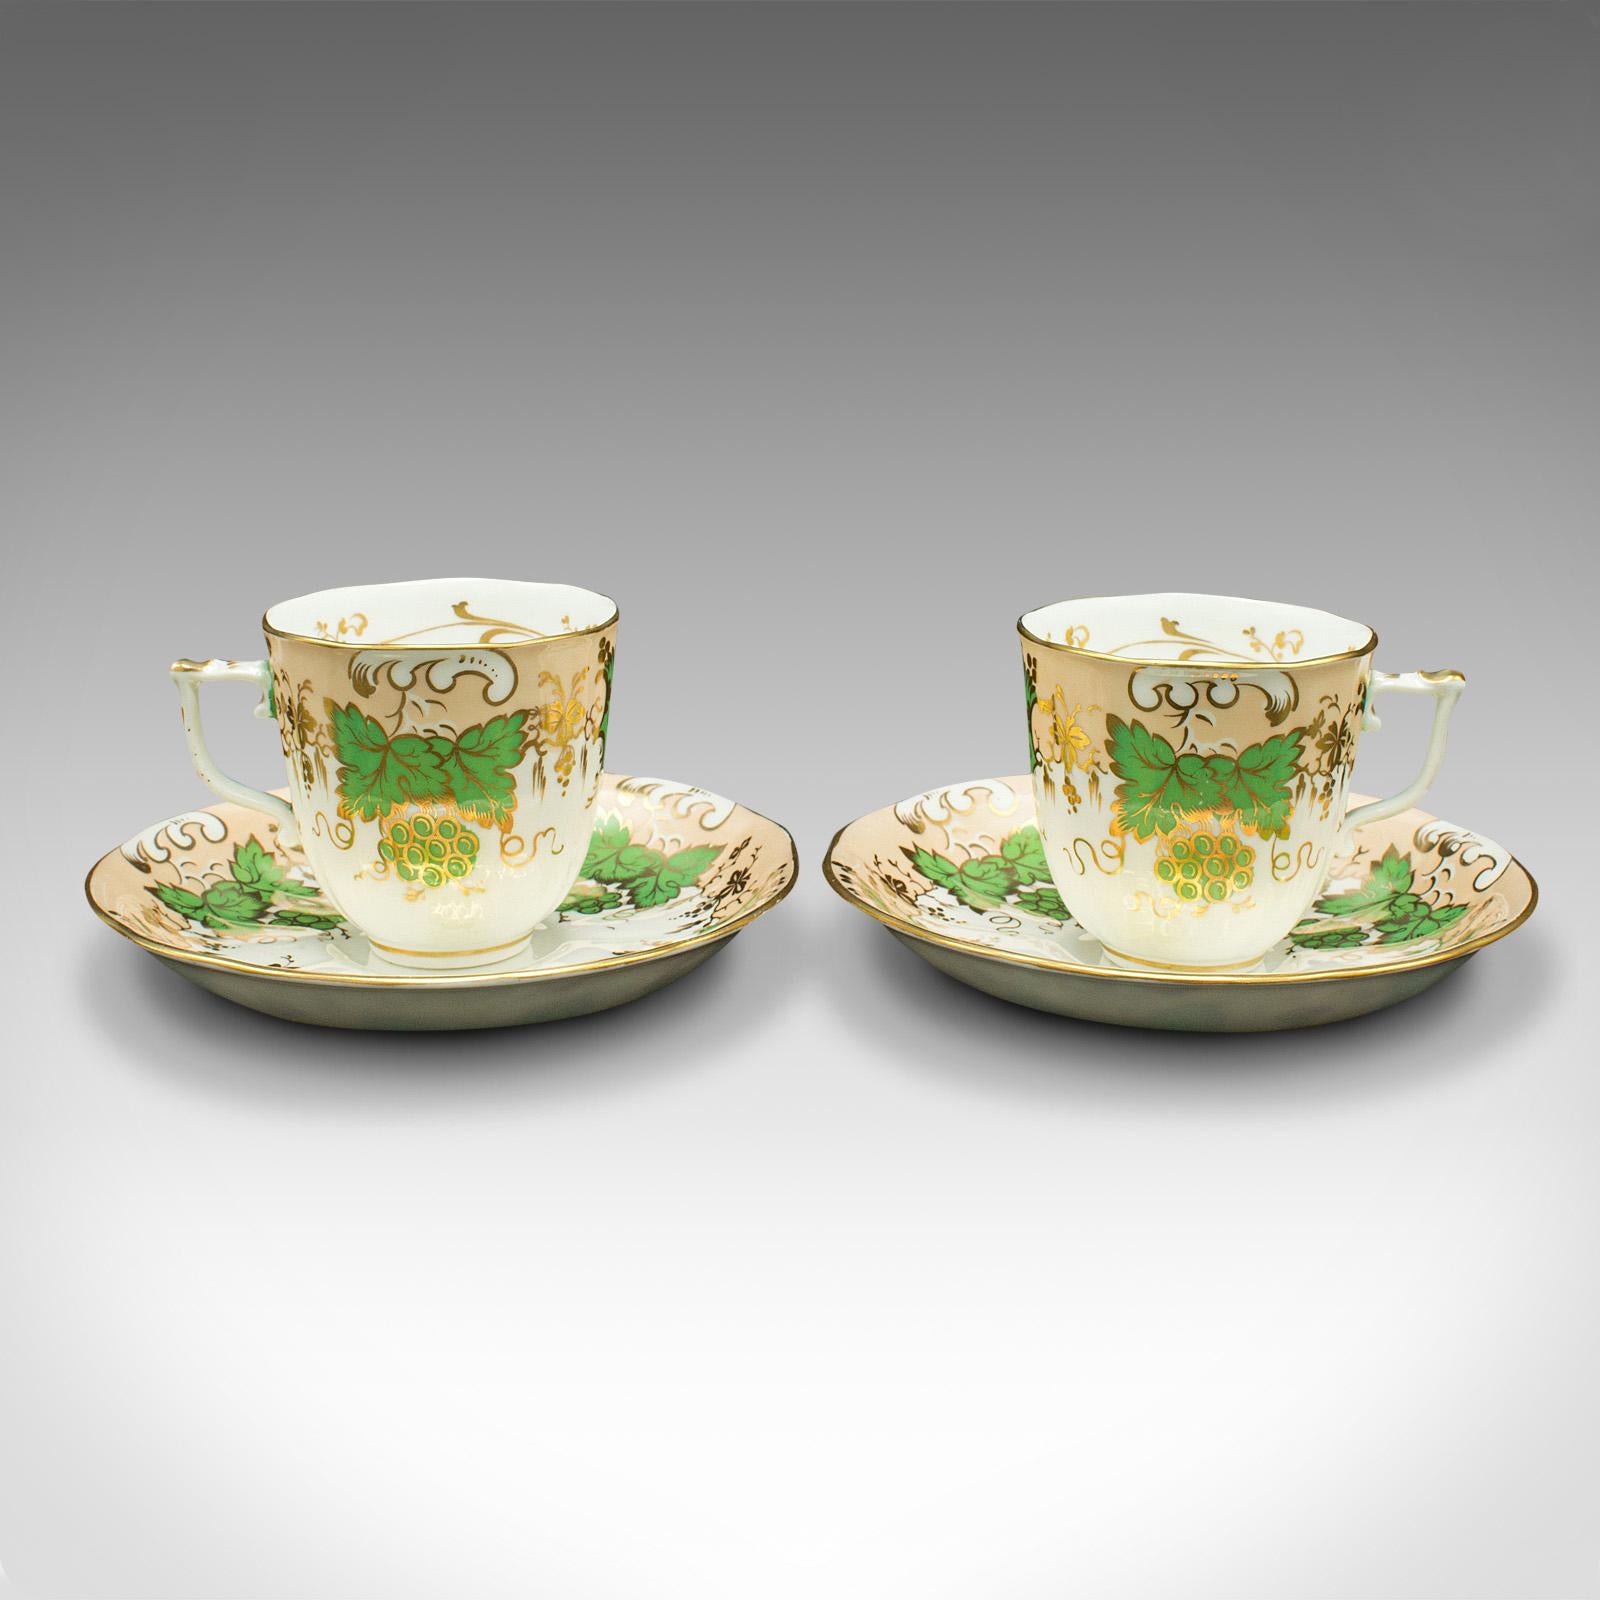 Dies ist ein Satz von 4 antiken Kaffeetassen. Eine englische, dekorative Trinkkanne und Untertasse aus Bone China mit grünem Traubenmuster aus der viktorianischen Zeit um 1850.

Wunderschön verziert und angenehm in der Hand liegend
Zeigt eine